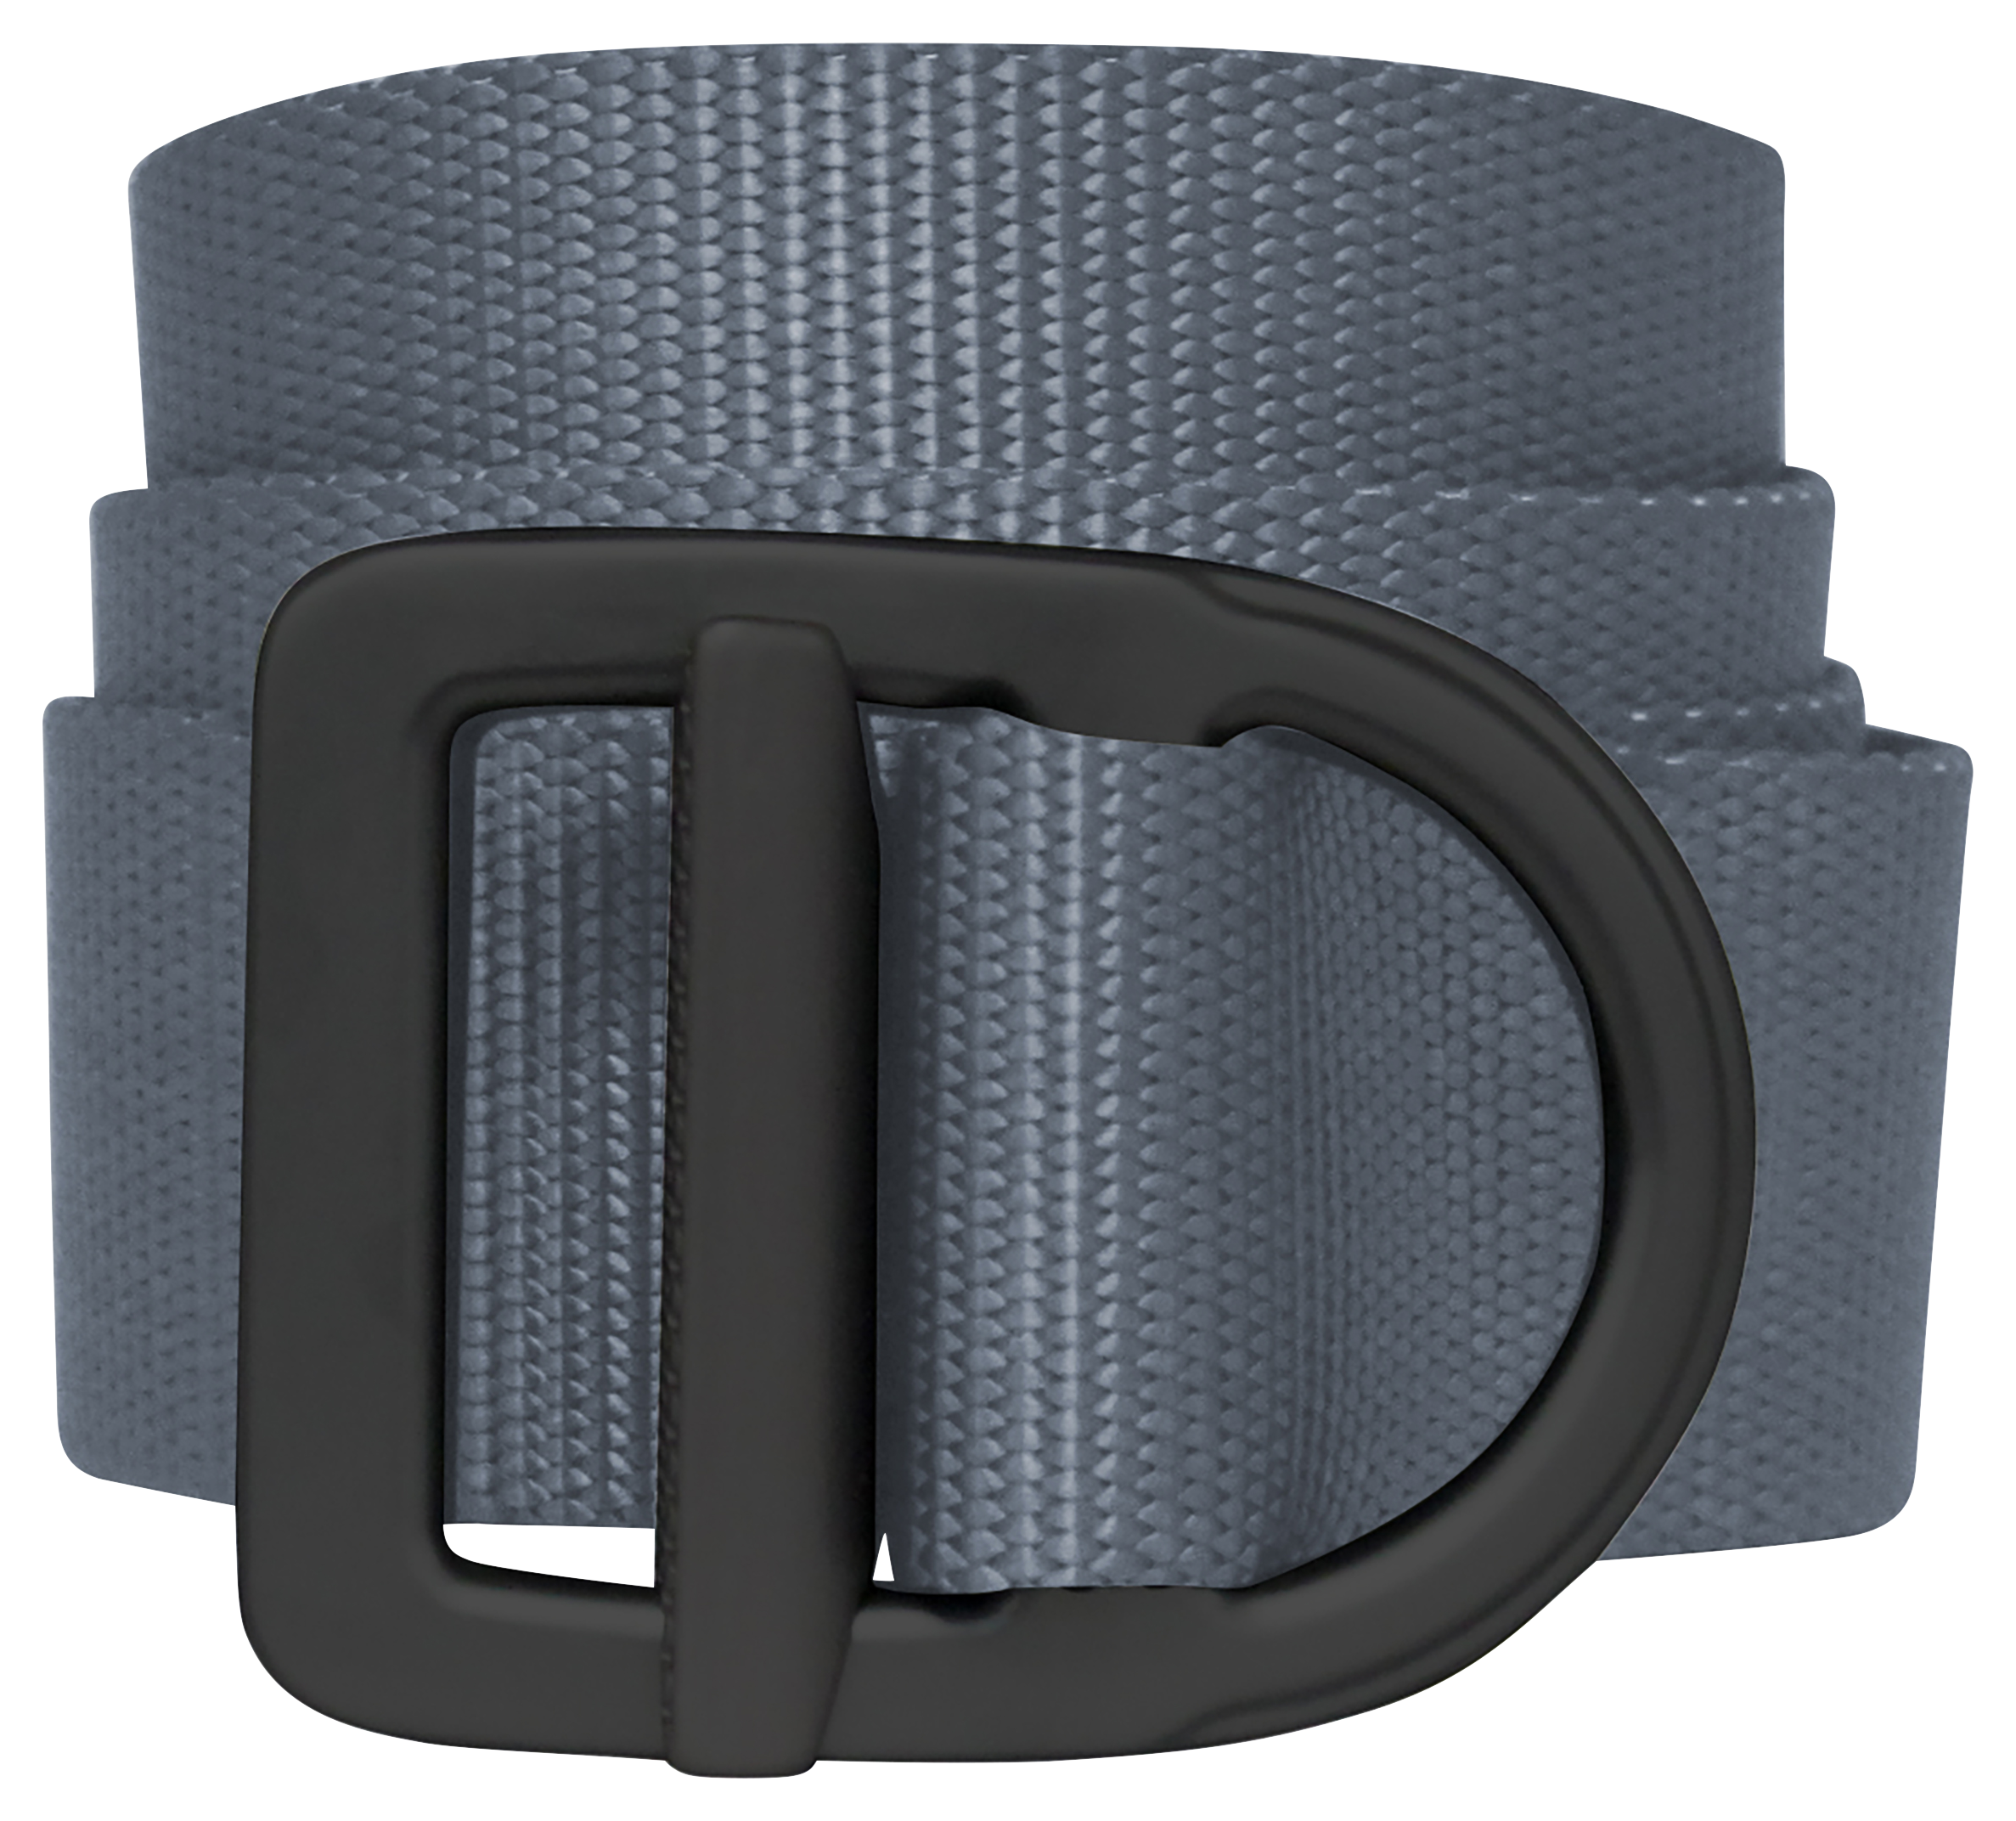 Bison Designs Last Chance Delta Light-Duty Belt for Men - Grey/Black - 2XL